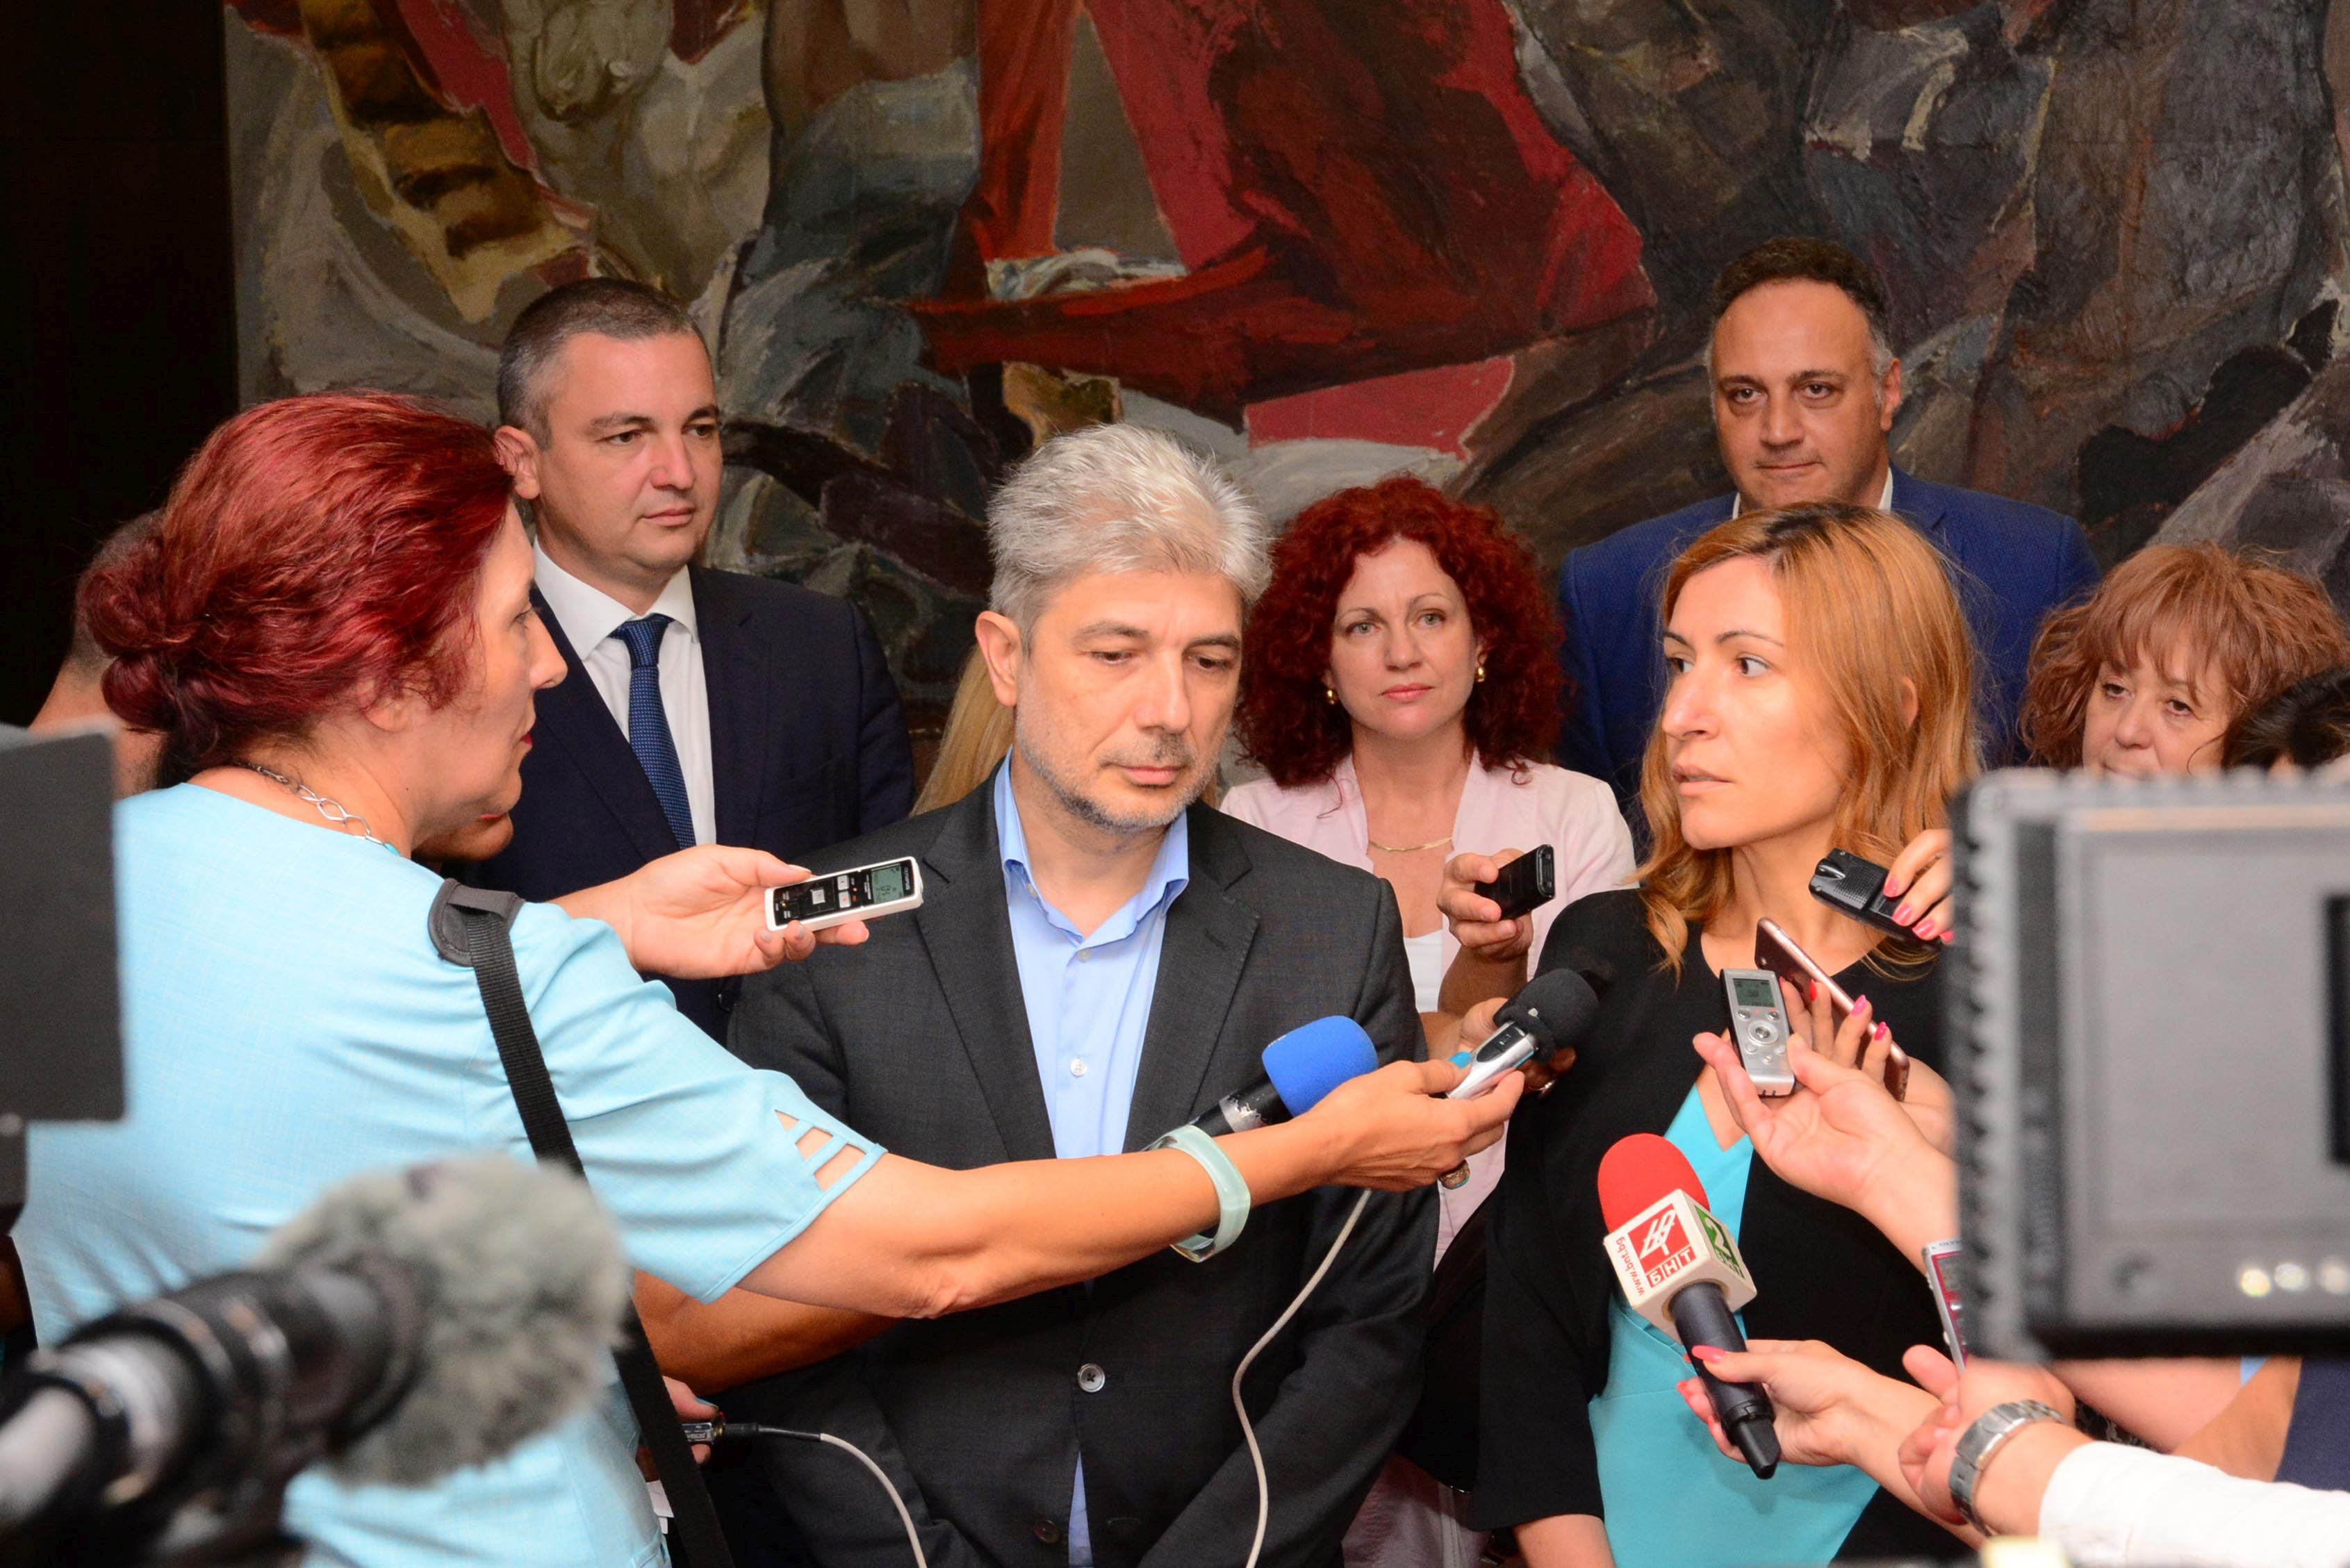 Обществена поръчка на министър Ангелкова влезе в прокуратурата